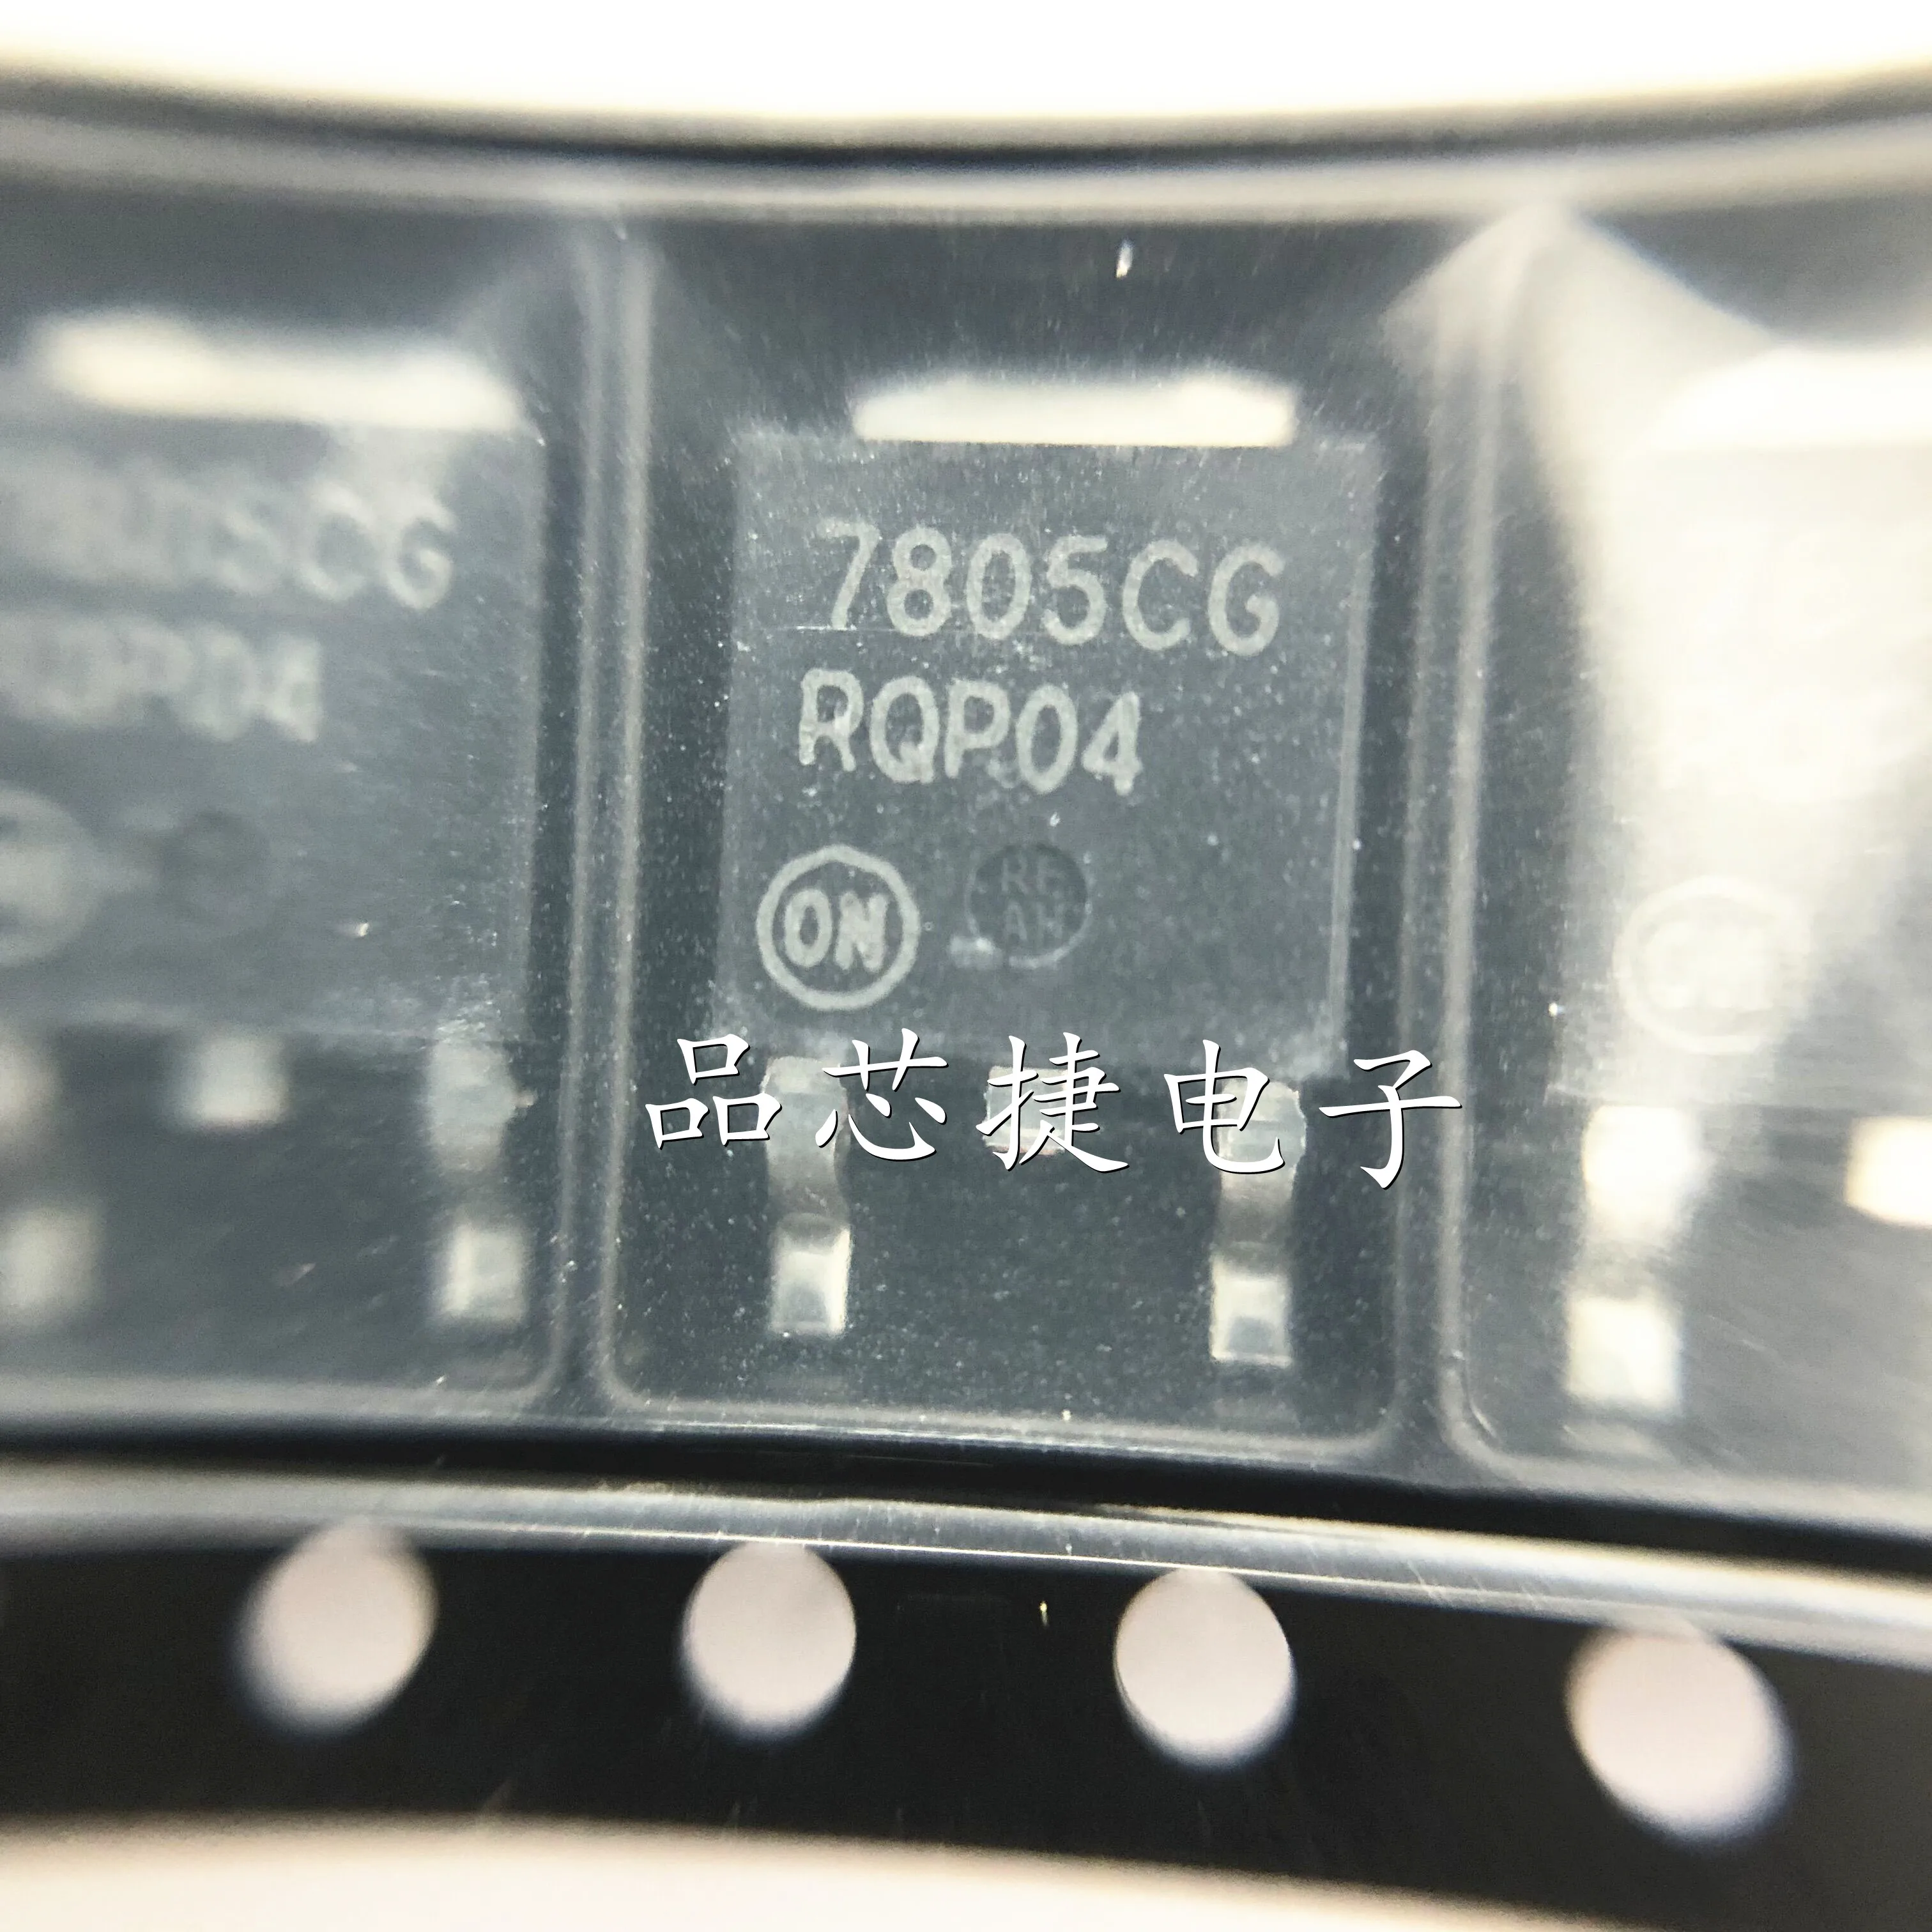 

10 шт. Оригинальный Новый MC7805CDTRKG 7805CG TO252 DPAK 5В линейный регулятор IC чип